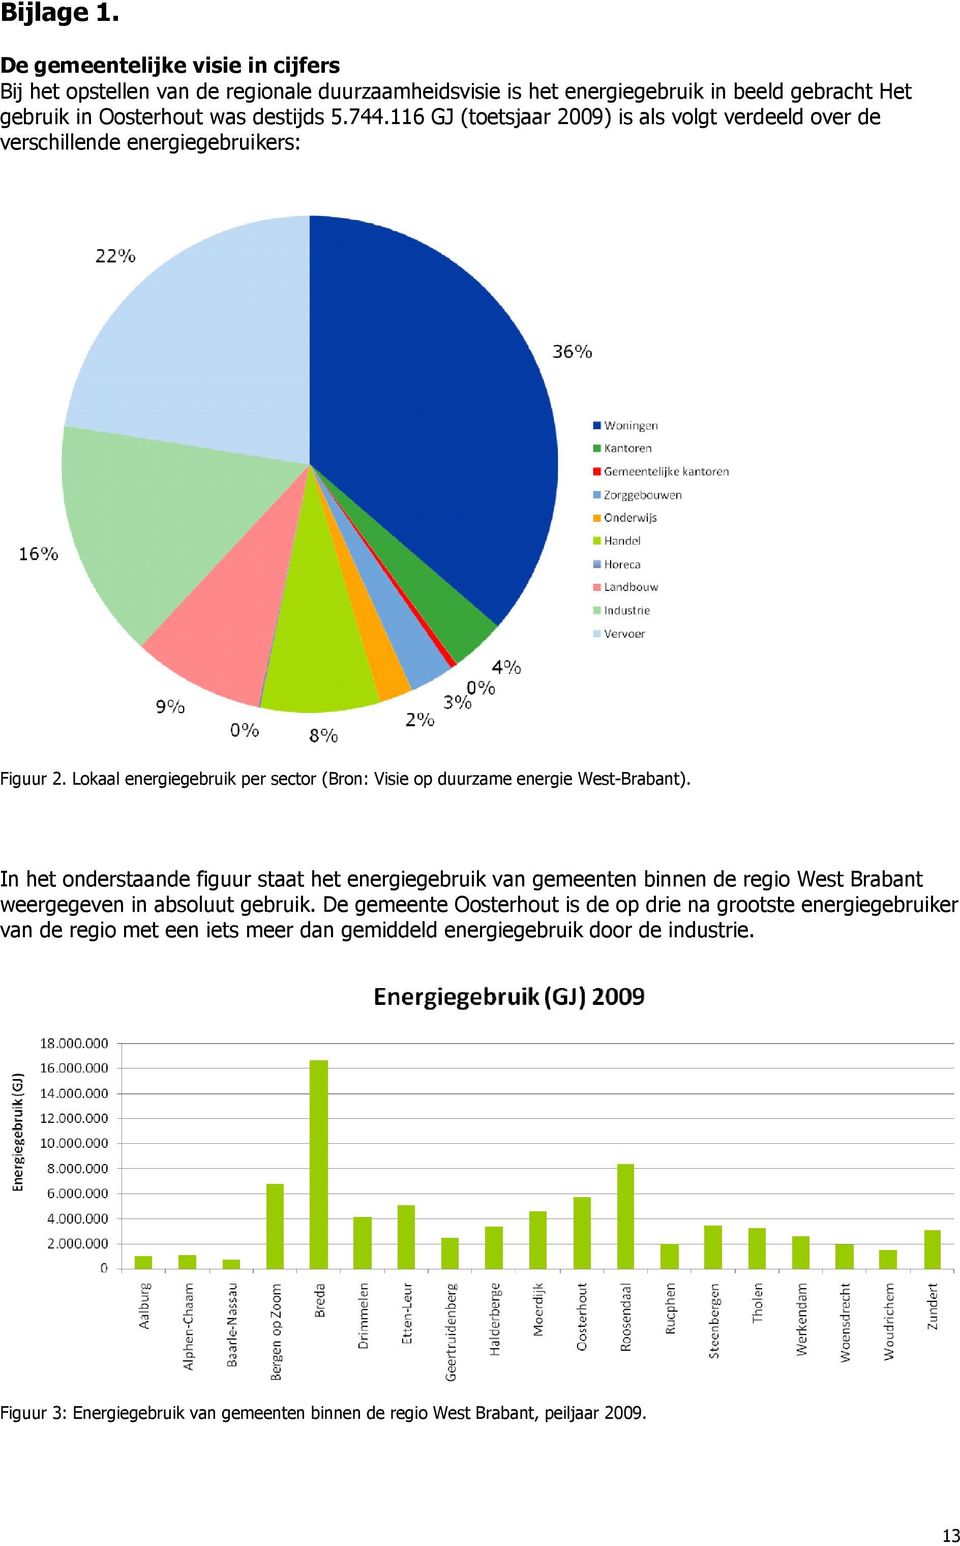 In het onderstaande figuur staat het energiegebruik van gemeenten binnen de regio West Brabant weergegeven in absoluut gebruik.